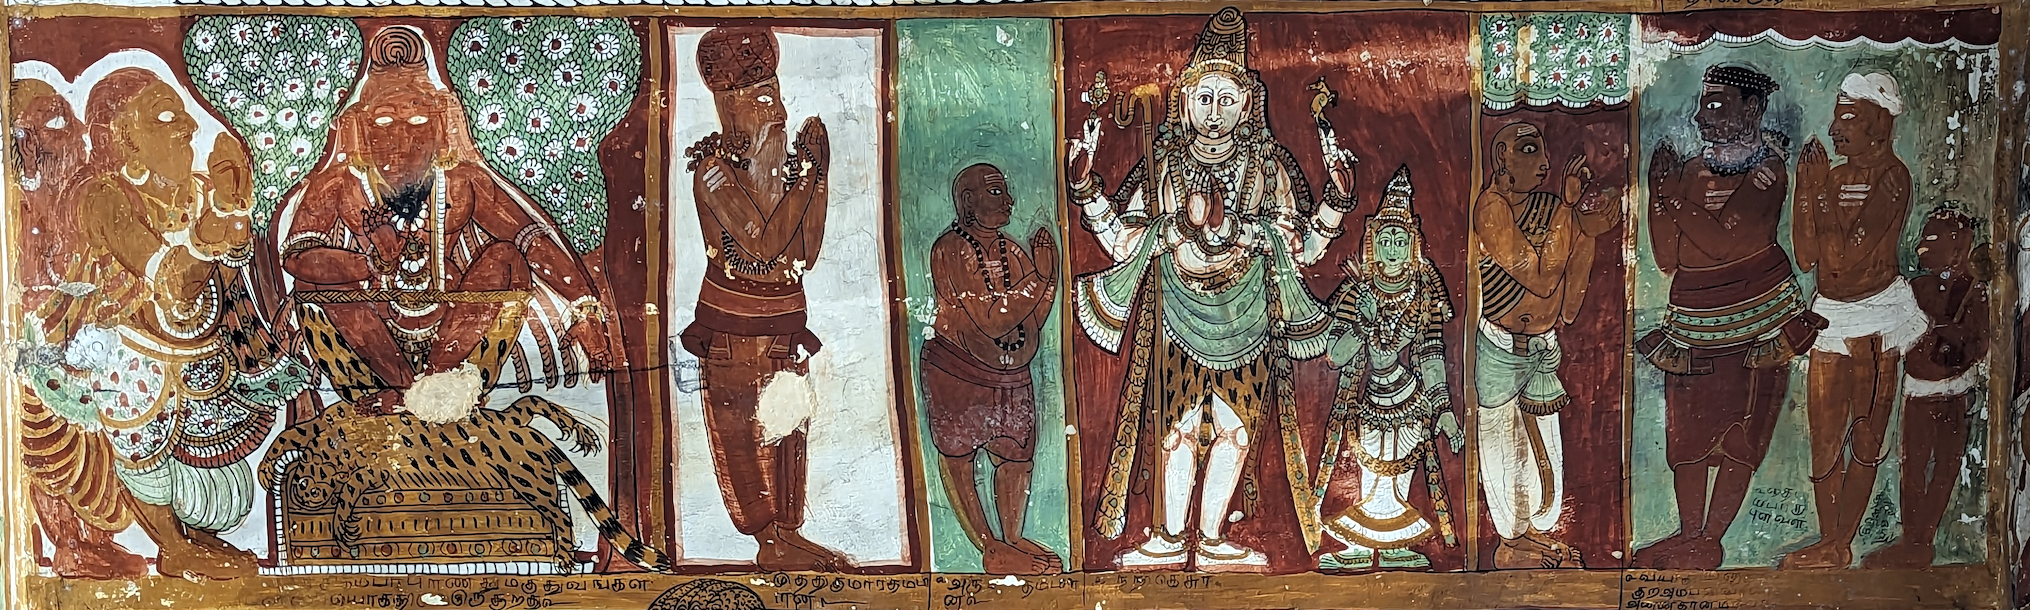 Portraits d'ascètes du monastère de Thiruvavaduthurai, 17ème siècle, Chidambaram